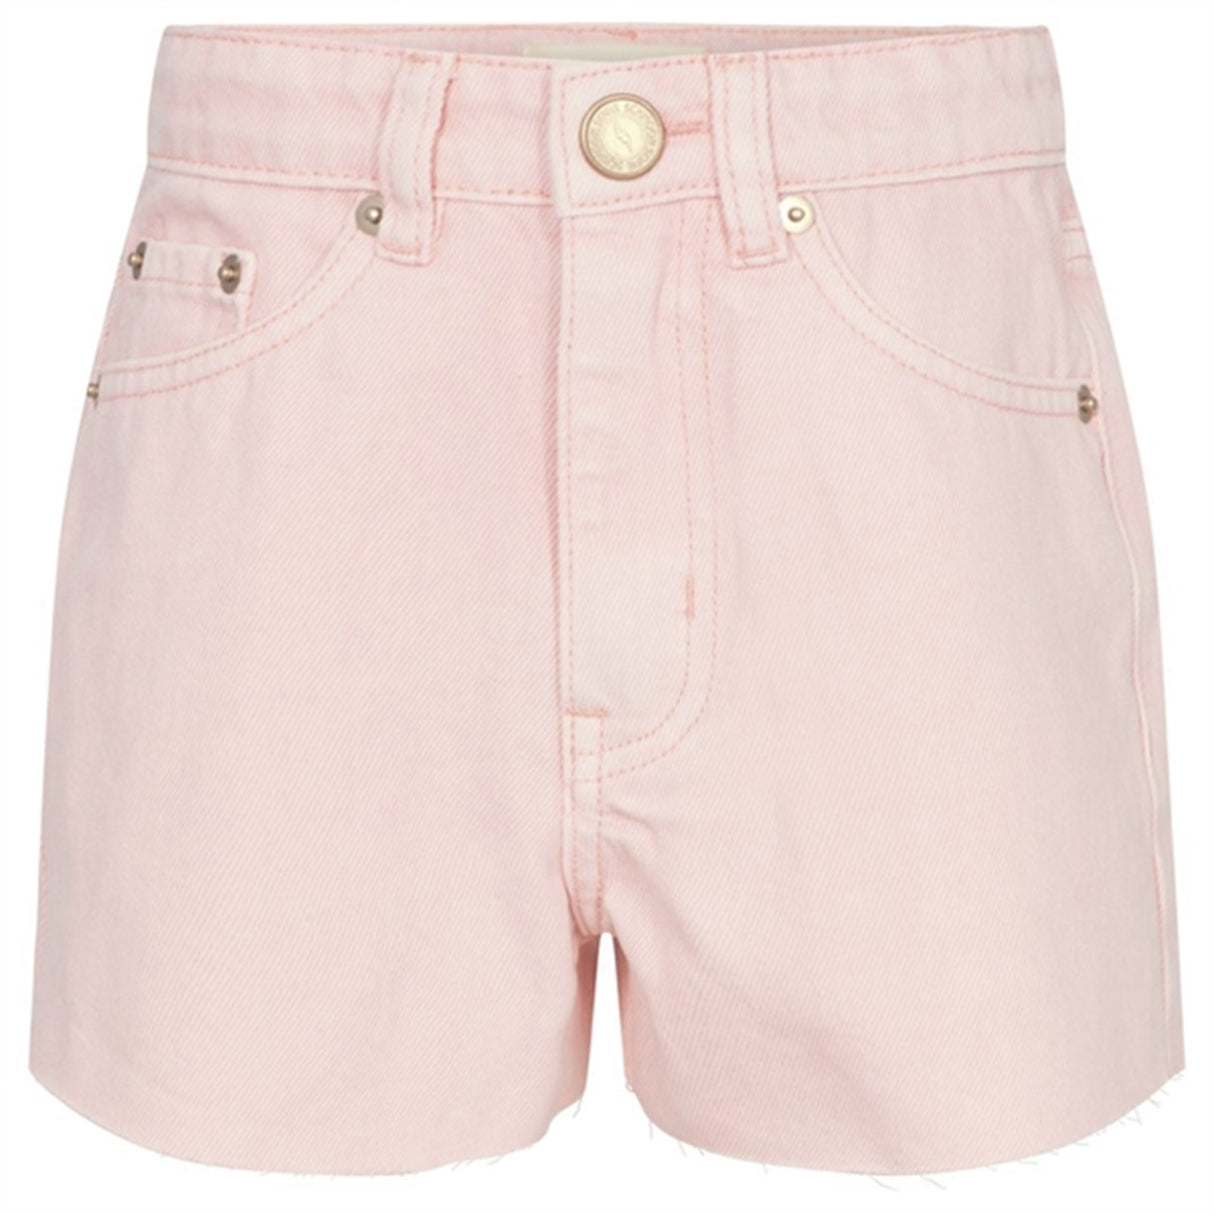 Sofie Schnoor Light Pink Denim Shorts 4